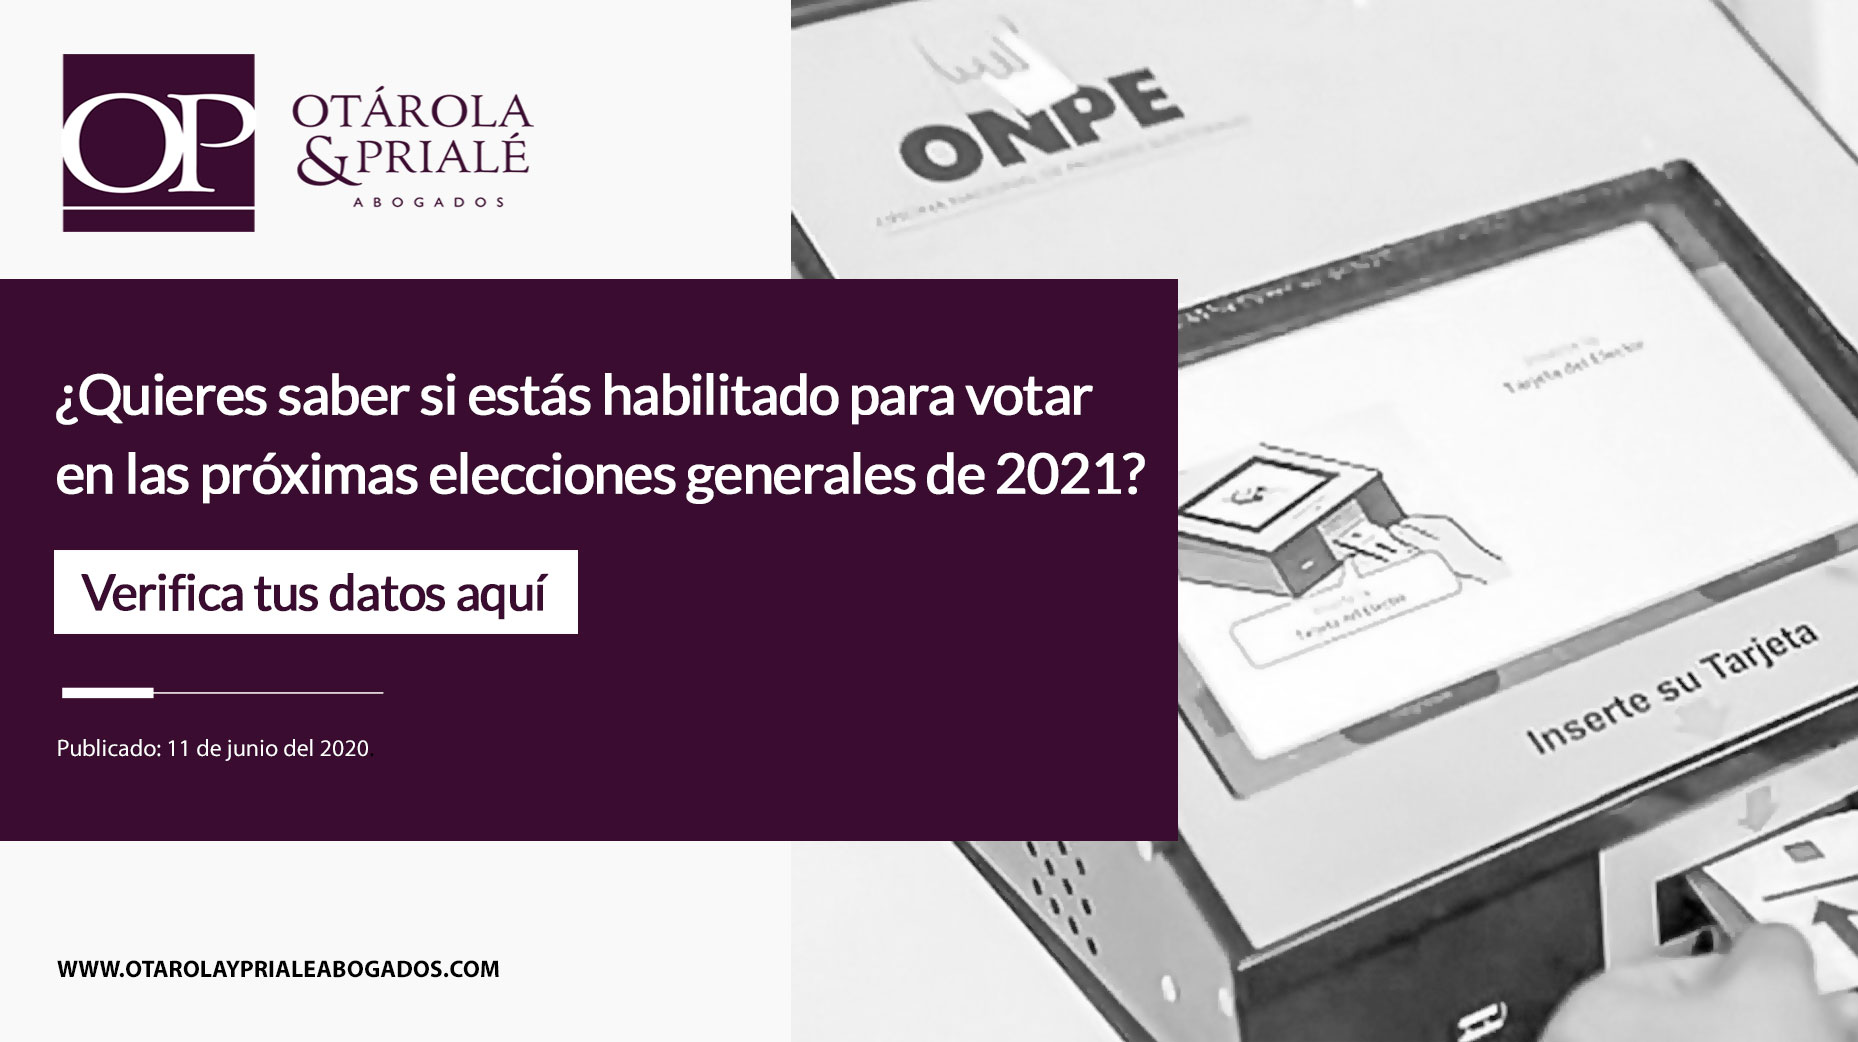 ¿Quieres saber si estás habilitado para votar en las próximas elecciones generales de 2021?